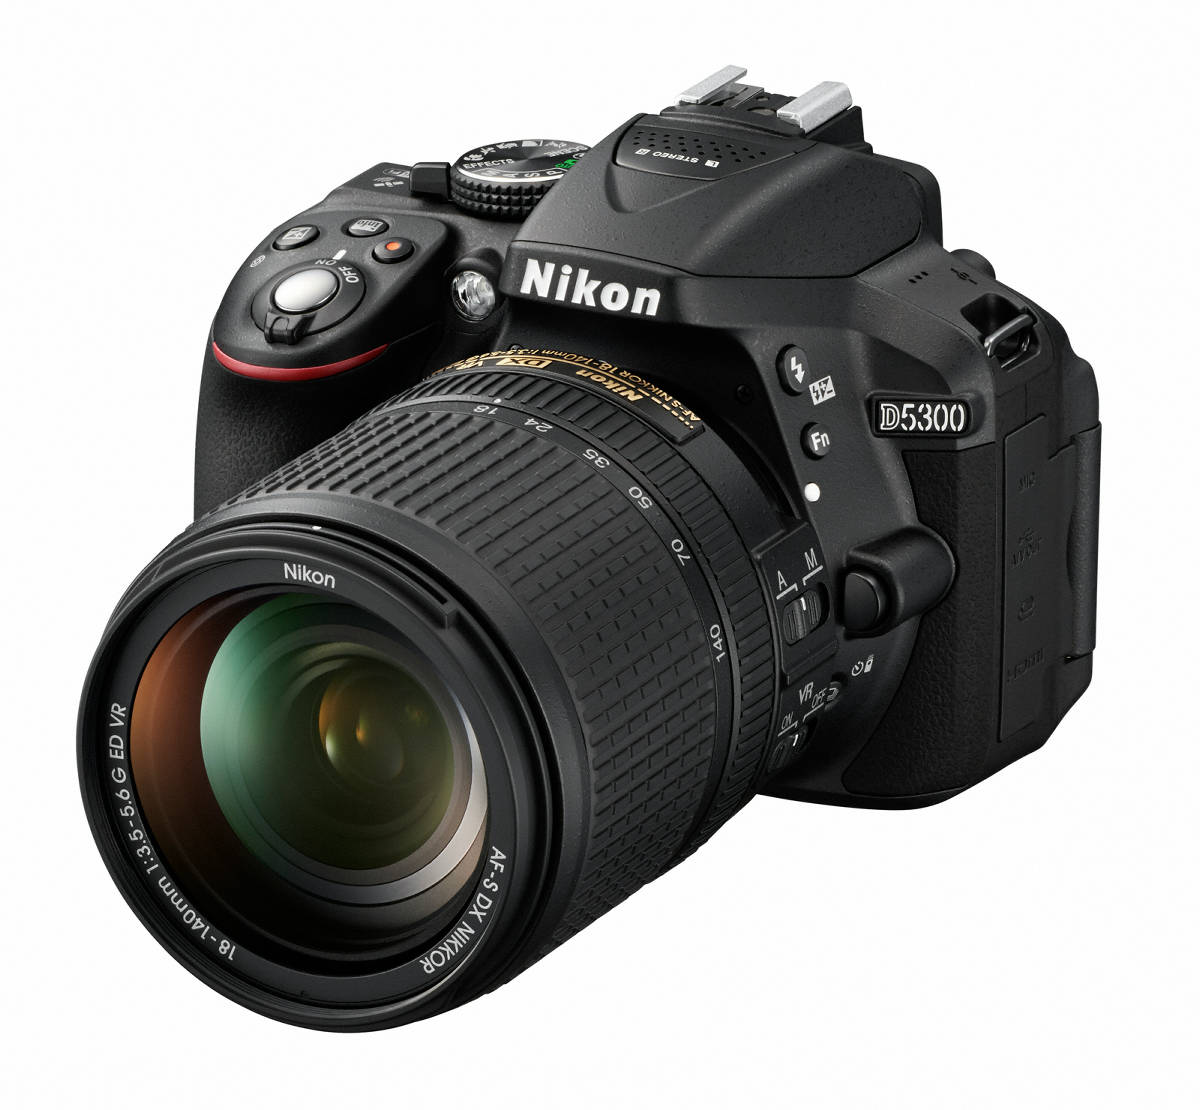 ニコン初のWi-Fi・GPS対応デジタル一眼レフカメラ「D5300」が11月中旬 